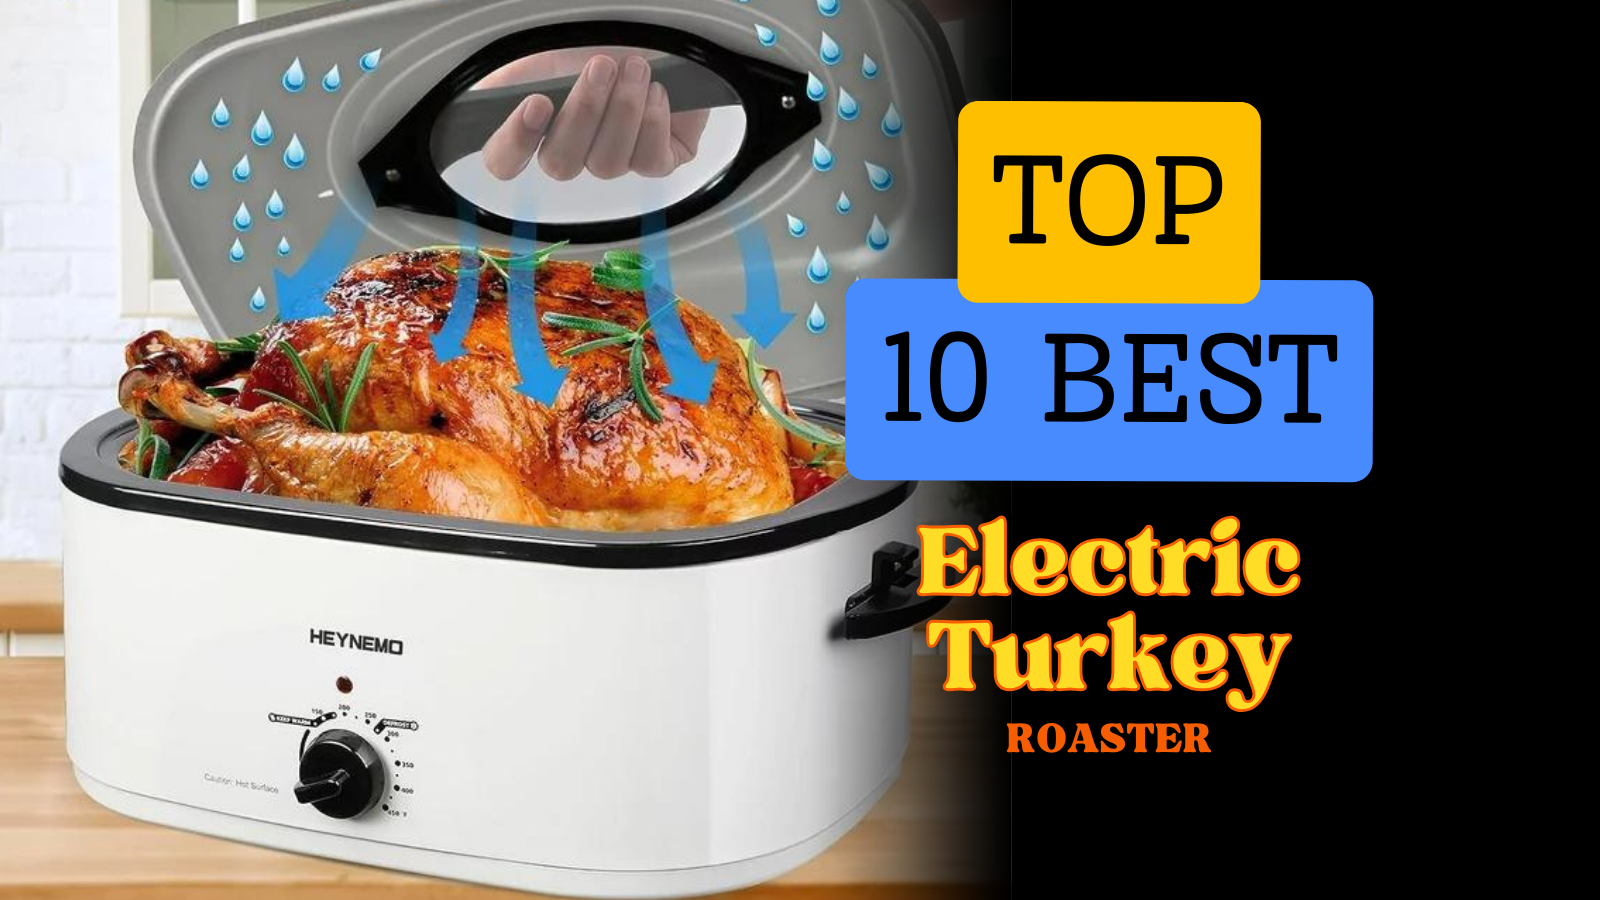 Best Electric Turkey Roaster